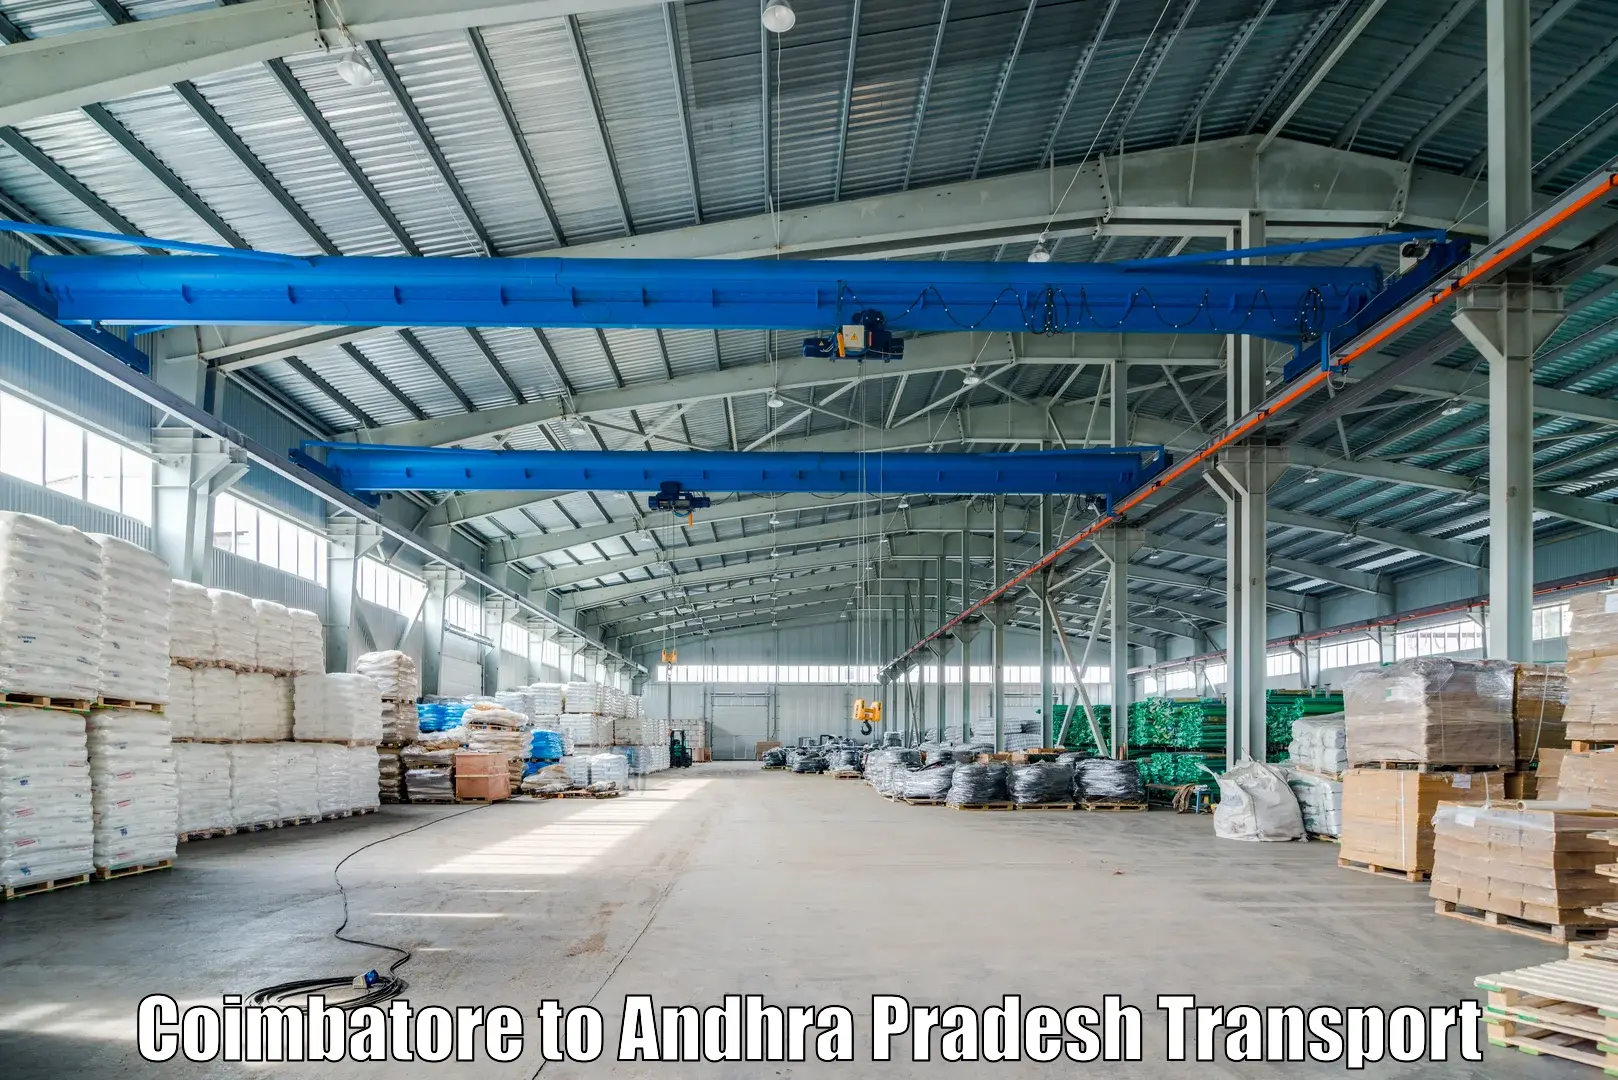 Truck transport companies in India Coimbatore to Samarlakota